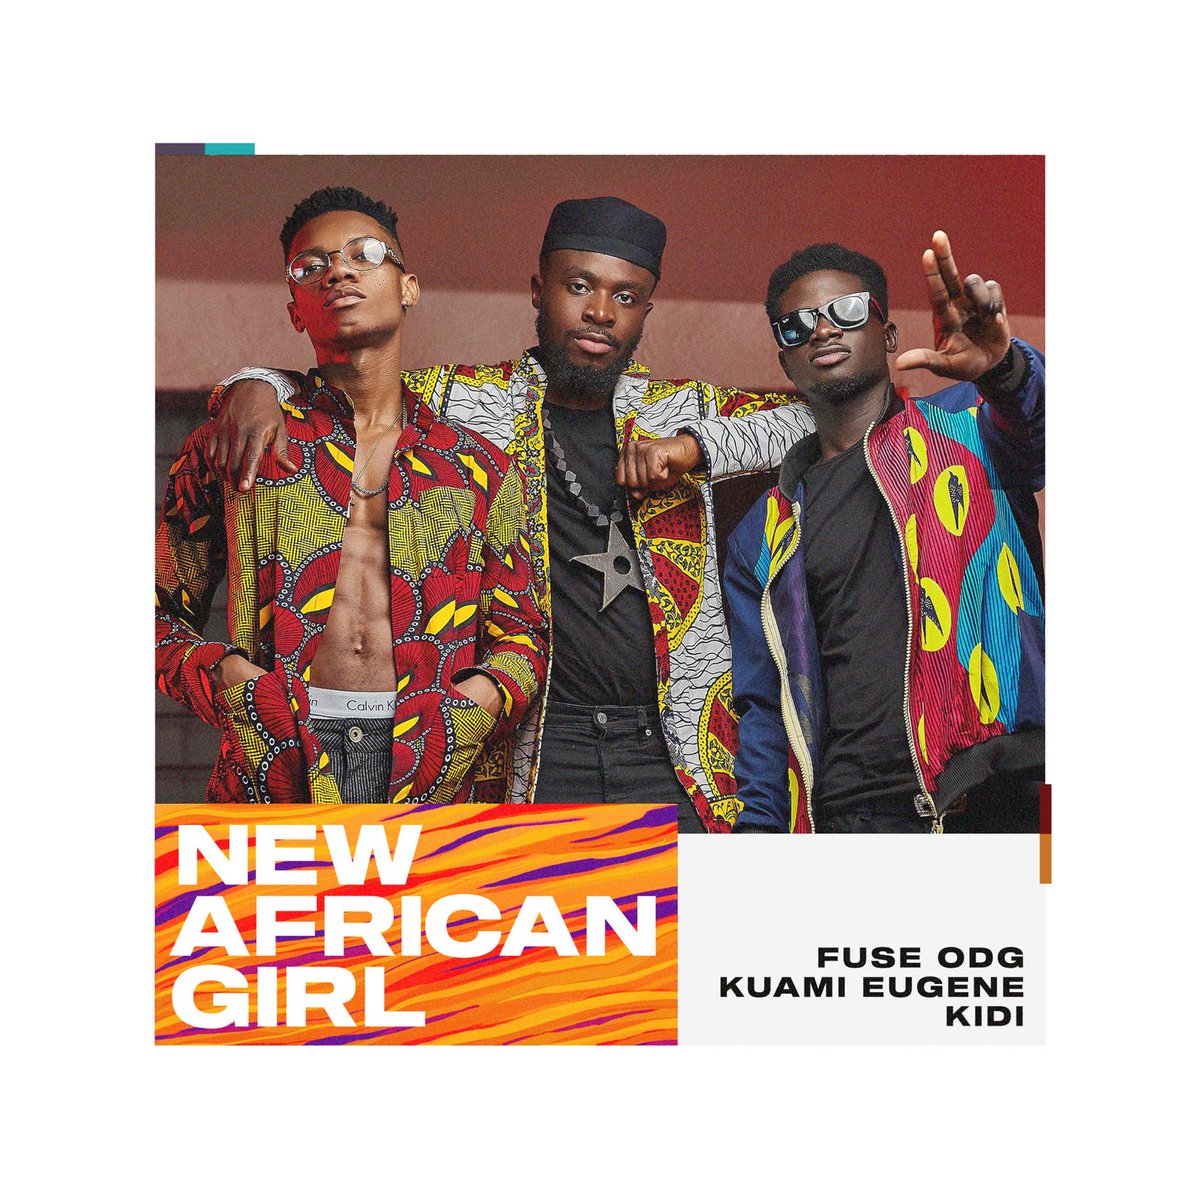  MUSIC : Fuse ODG – New African Girl ft. Kuami Eugene & KiDi